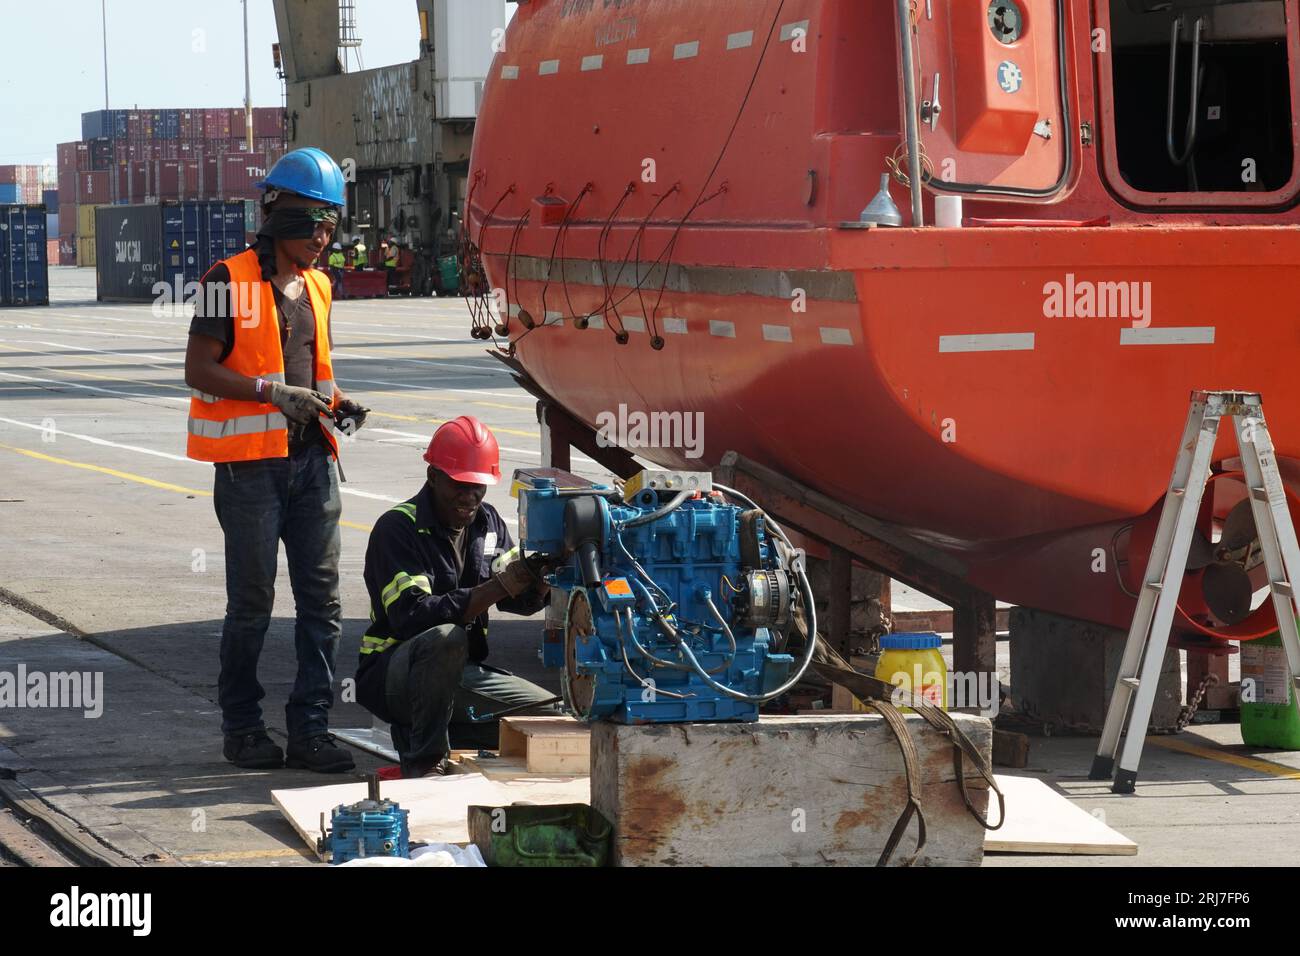 Due meccanici o tecnici neri riparano il motore di una scialuppa di salvataggio arancione fissata sulla base. Foto Stock